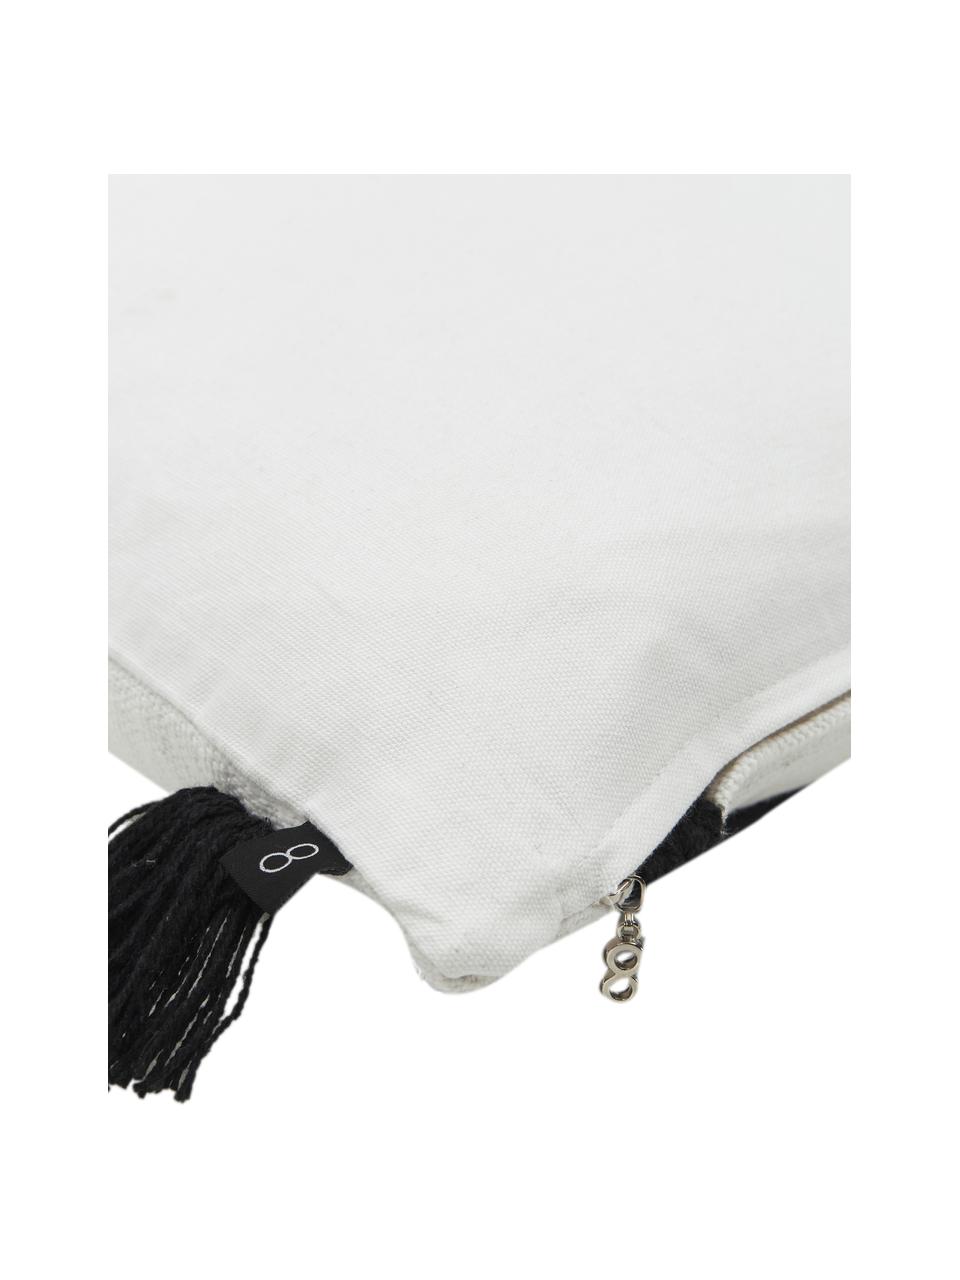 Copricuscino in cotone con nappe Piazza, 100% cotone, Bianco, nero, Larg. 50 x Lung. 50 cm